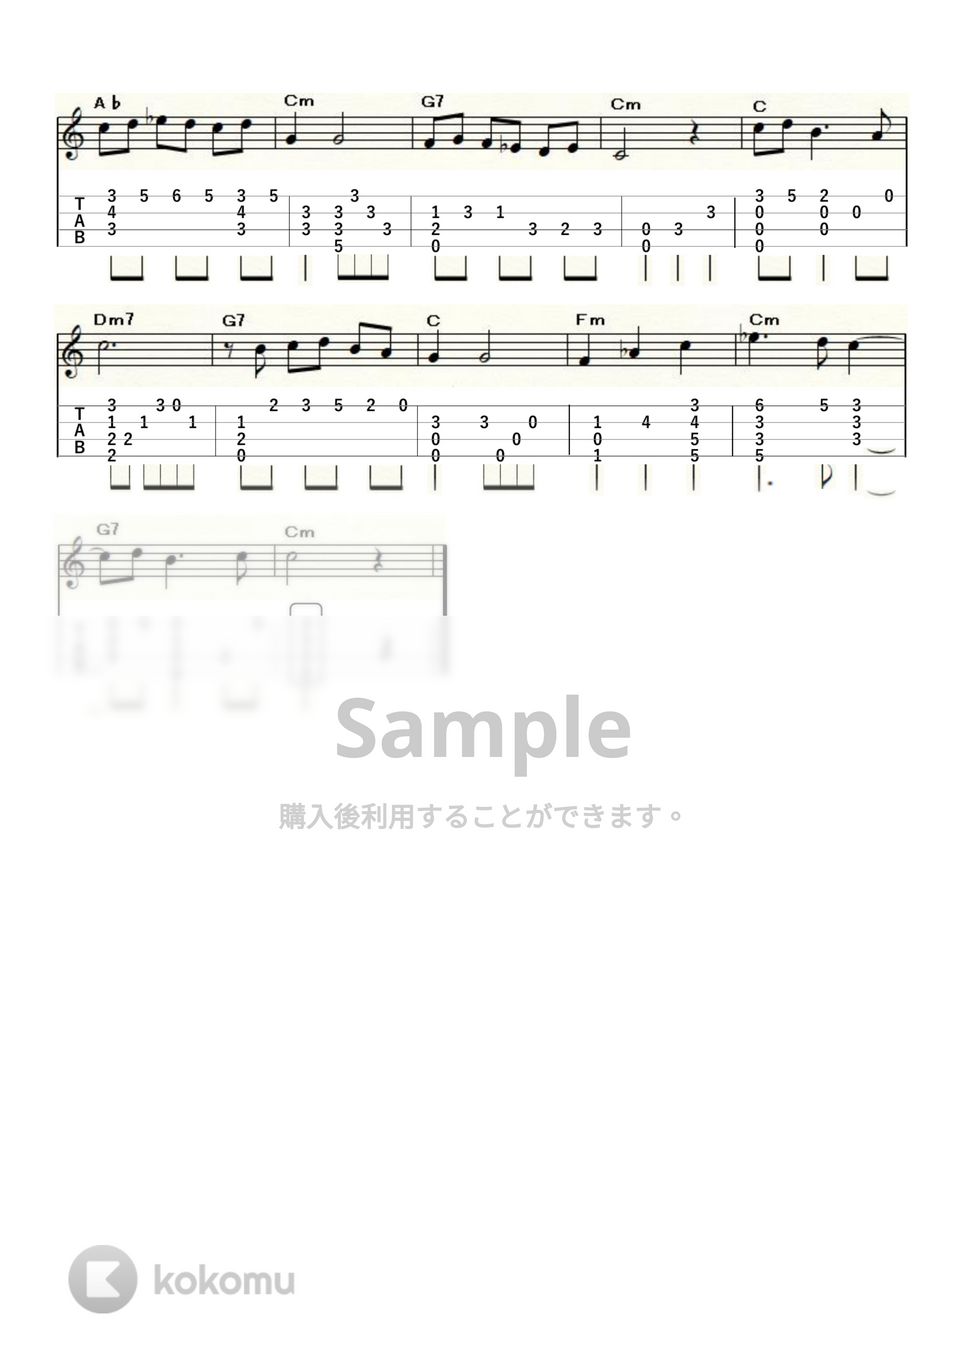 帰れソレントへ (ｳｸﾚﾚｿﾛ / High-G,Low-G / 中級) by ukulelepapa